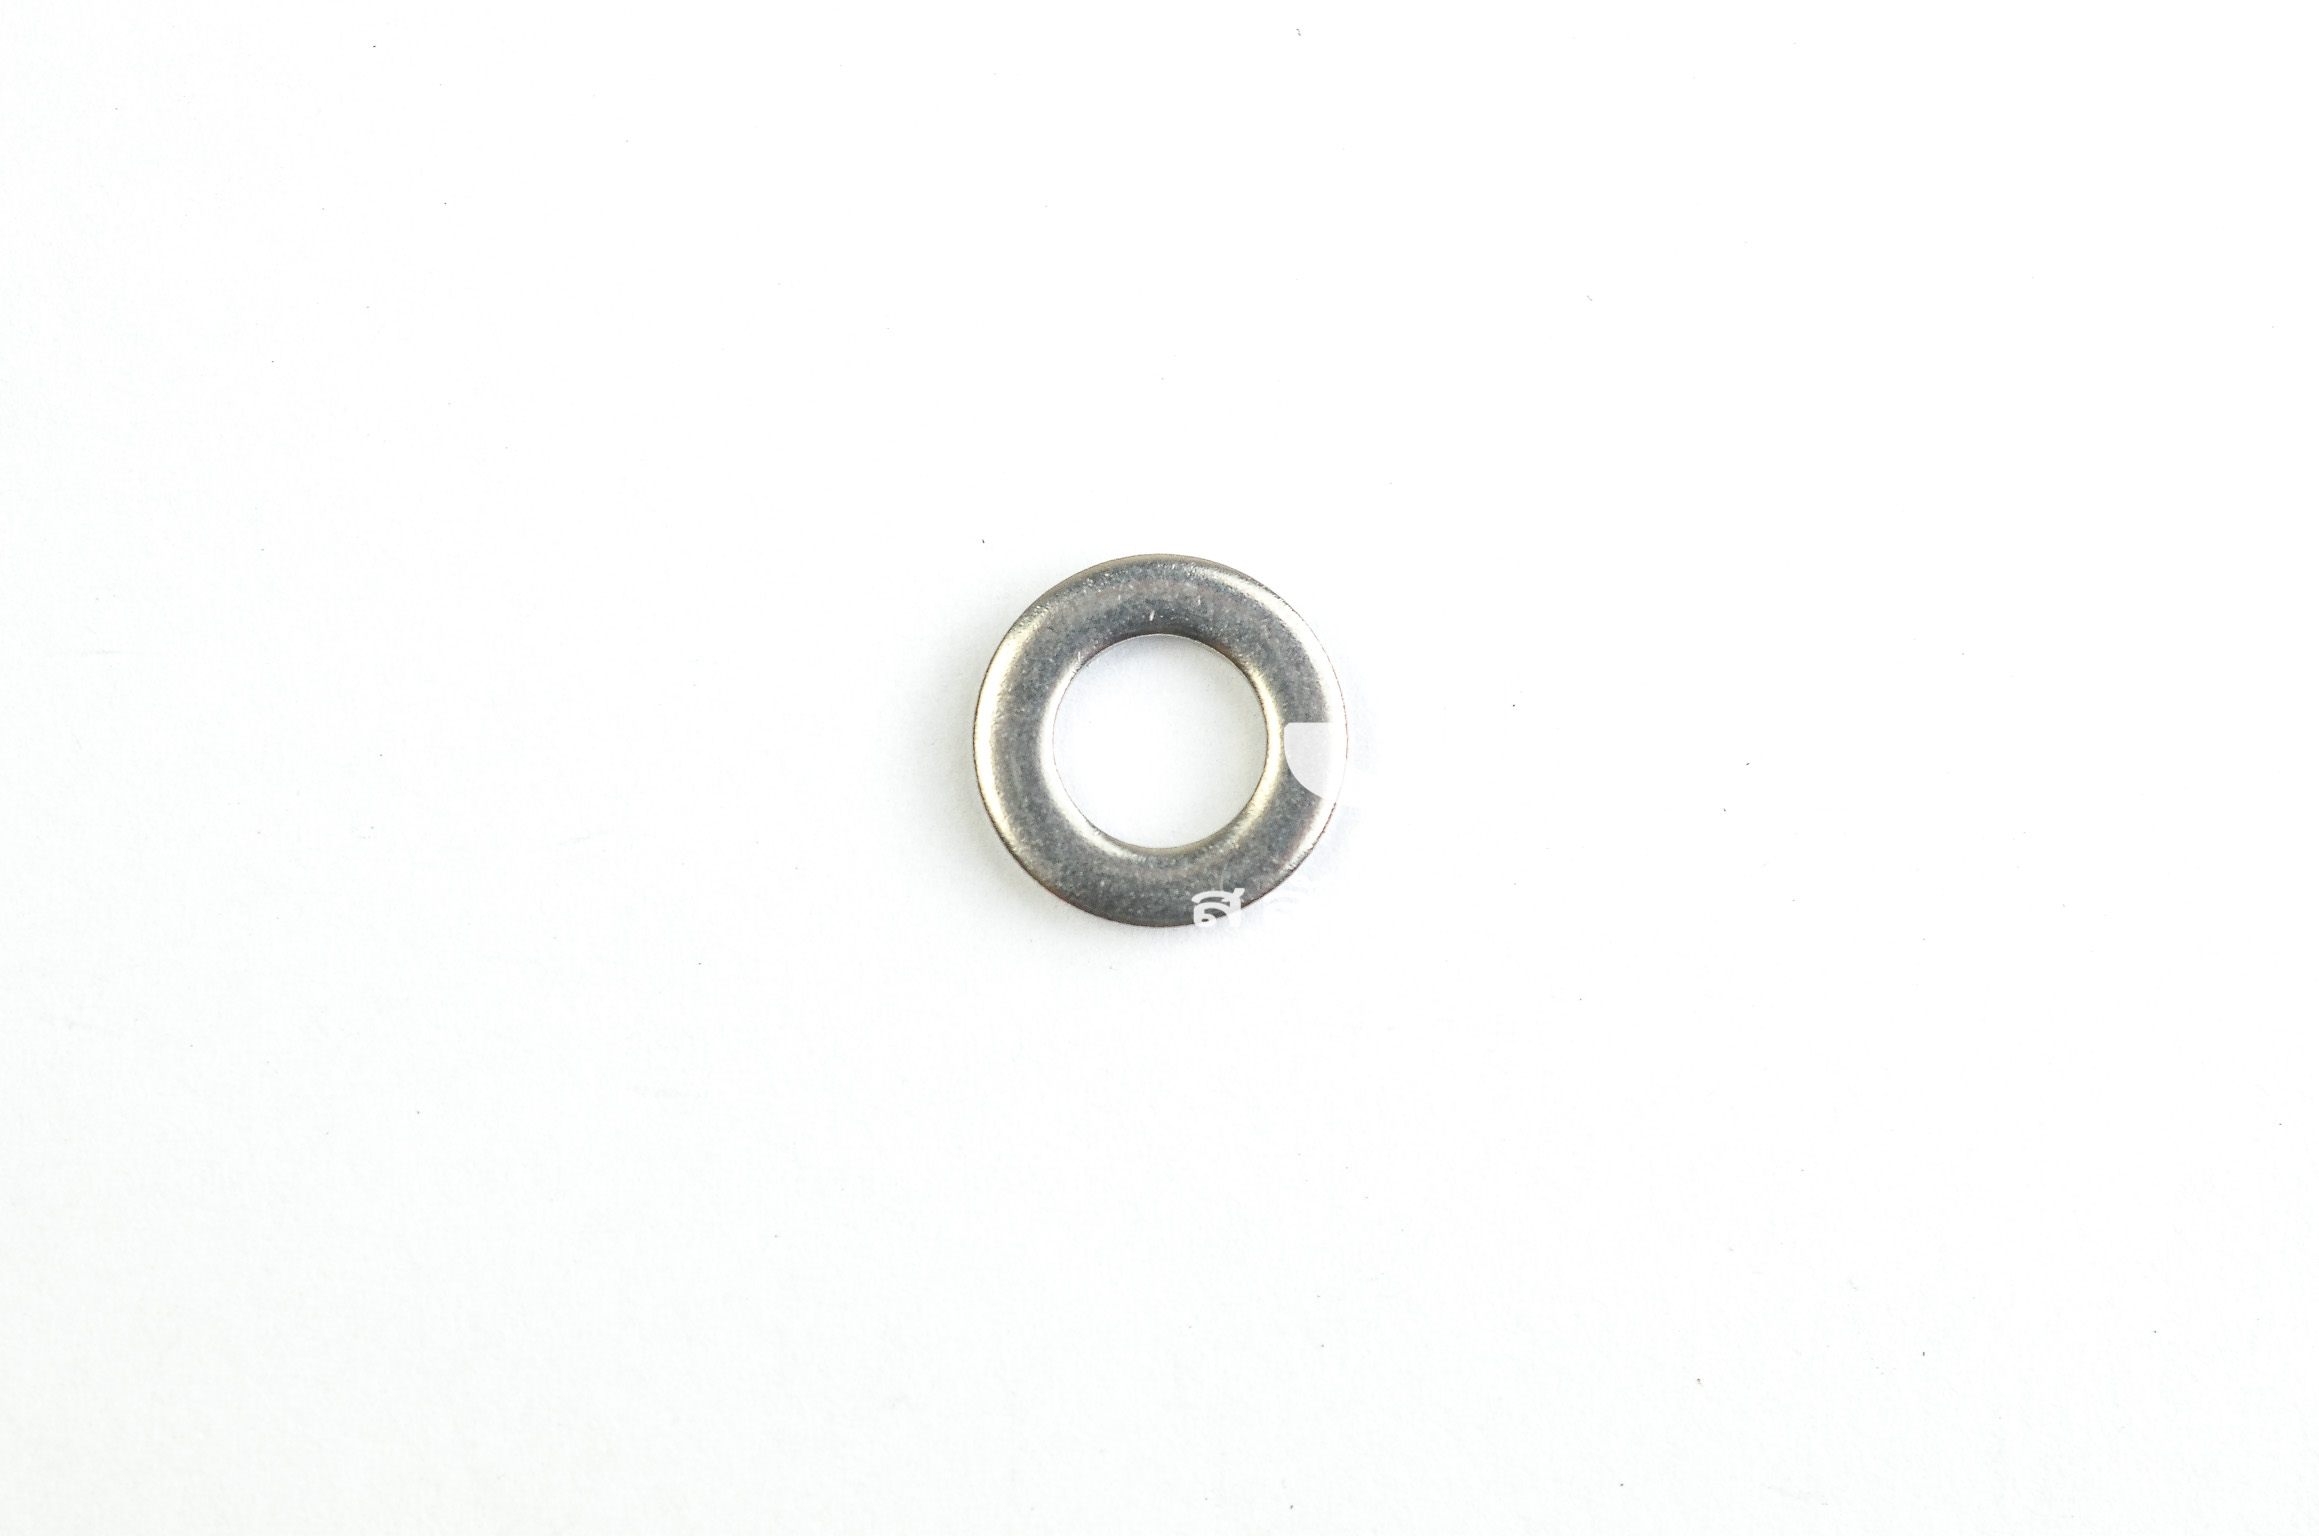 แหวนอีแปะ M6 แสตนเลส (6.6-11.7-1.5)